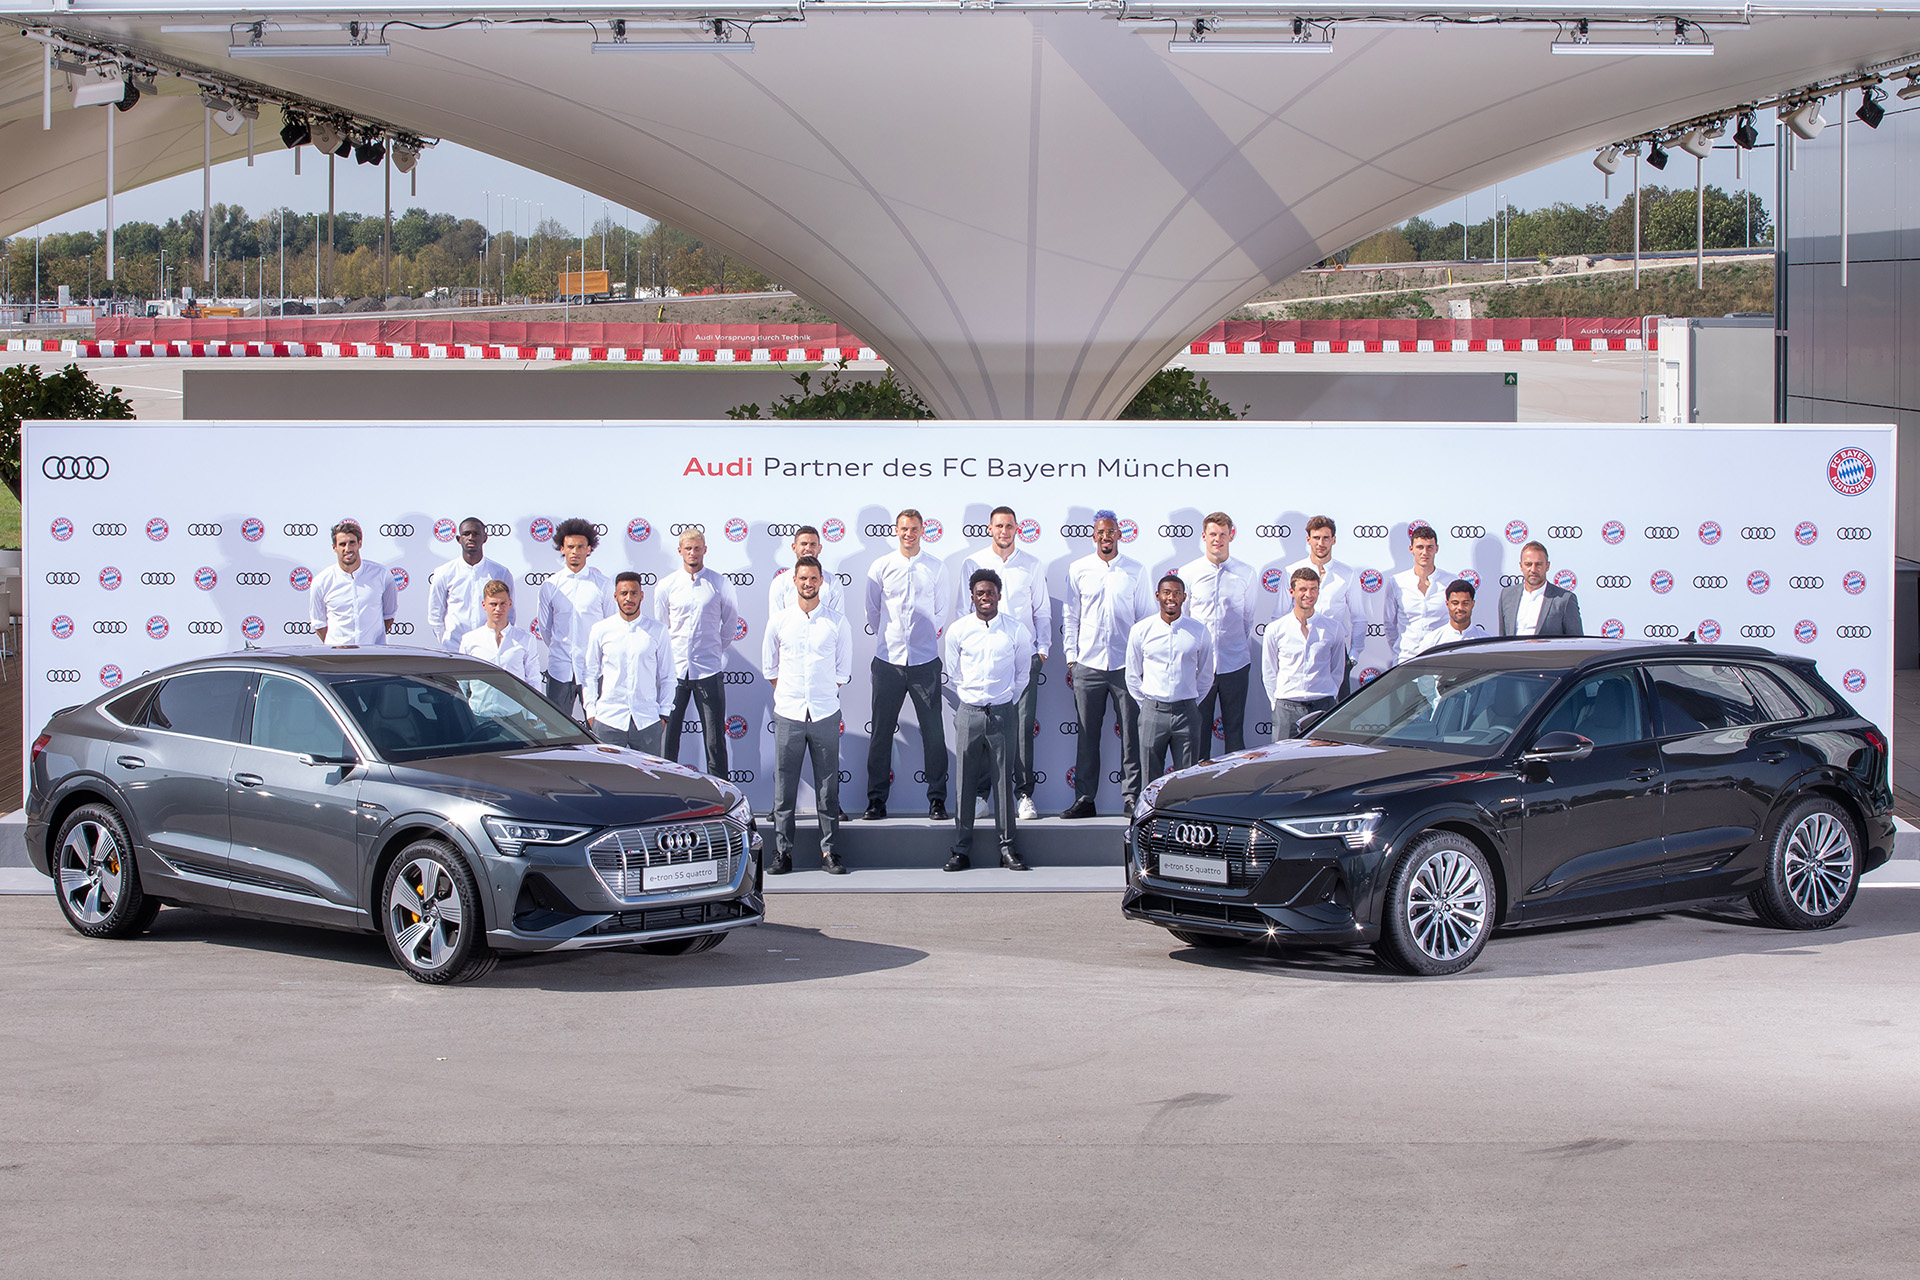 Οι νικητές του Champions League 2019-2020 οδηγούν Audi e-tron